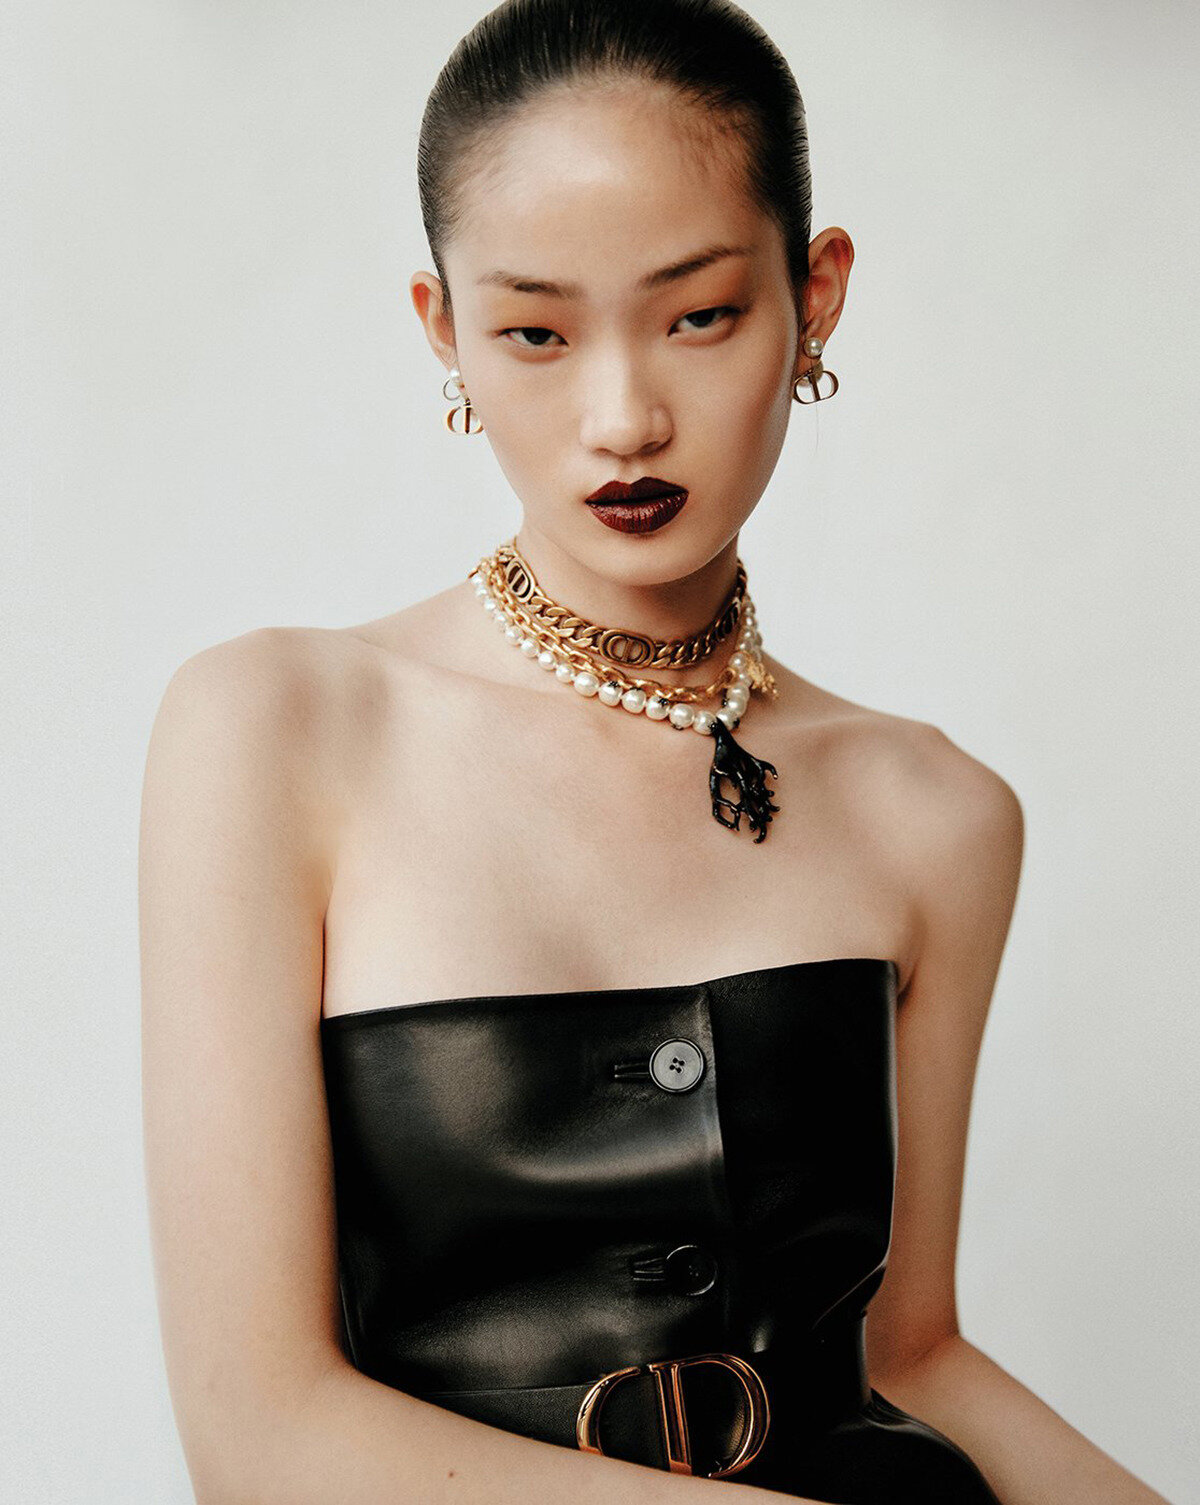 Hyun Ji Shin by Hyea W Kang for Vogue Korea June 2020 (5).jpg